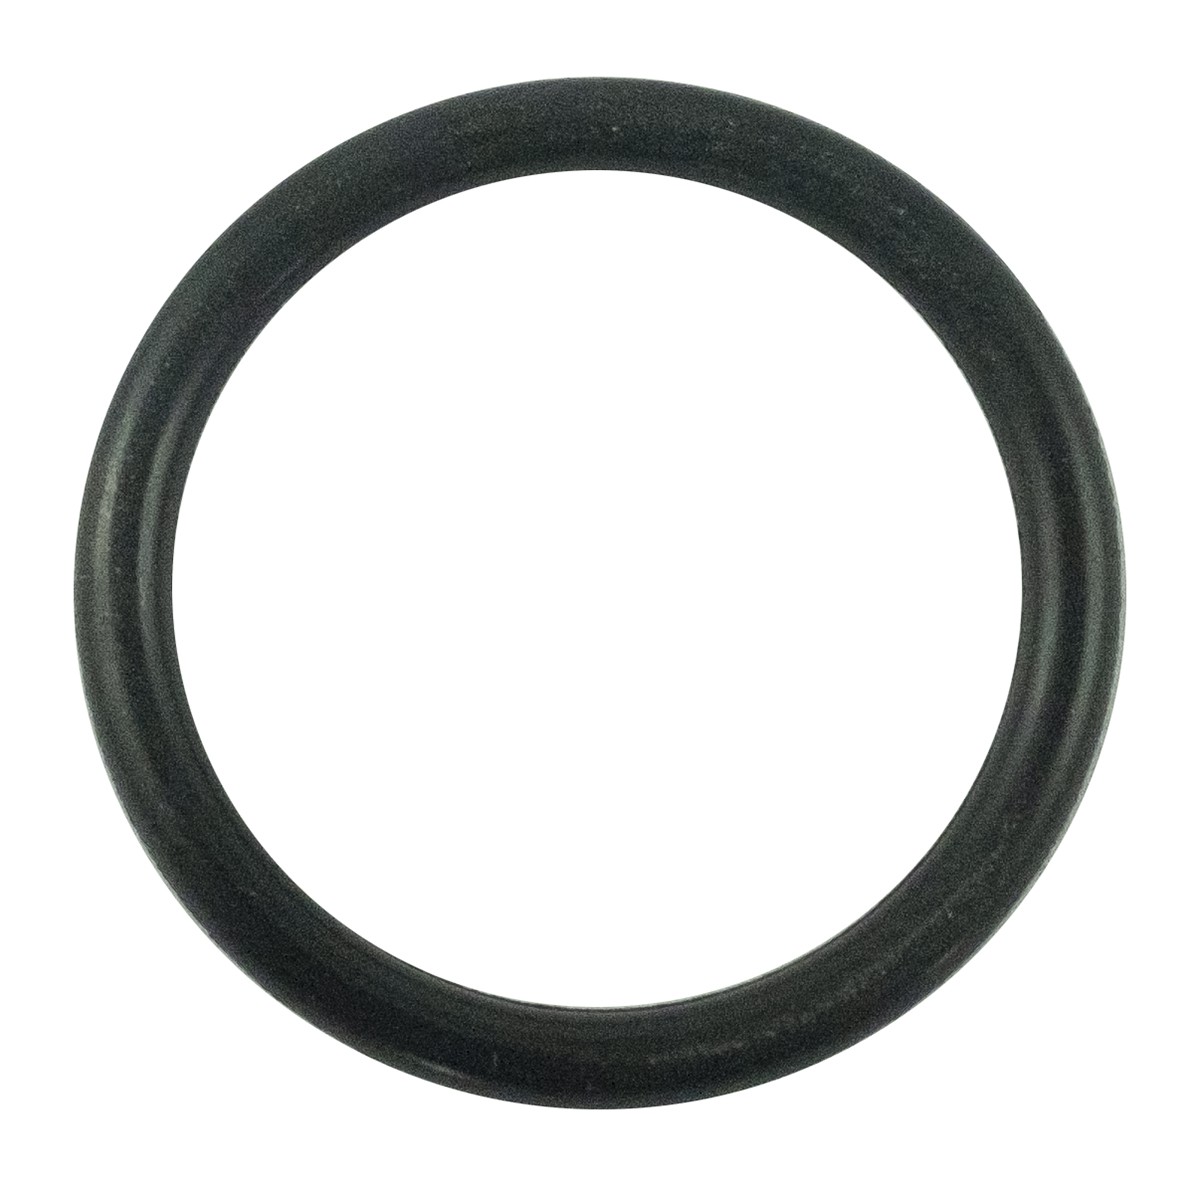 O-ring 20.40 x 2.40 mm / LS MT1.25 / LS MT3.35 / LS MT3.50 / S801021010 / 40029208